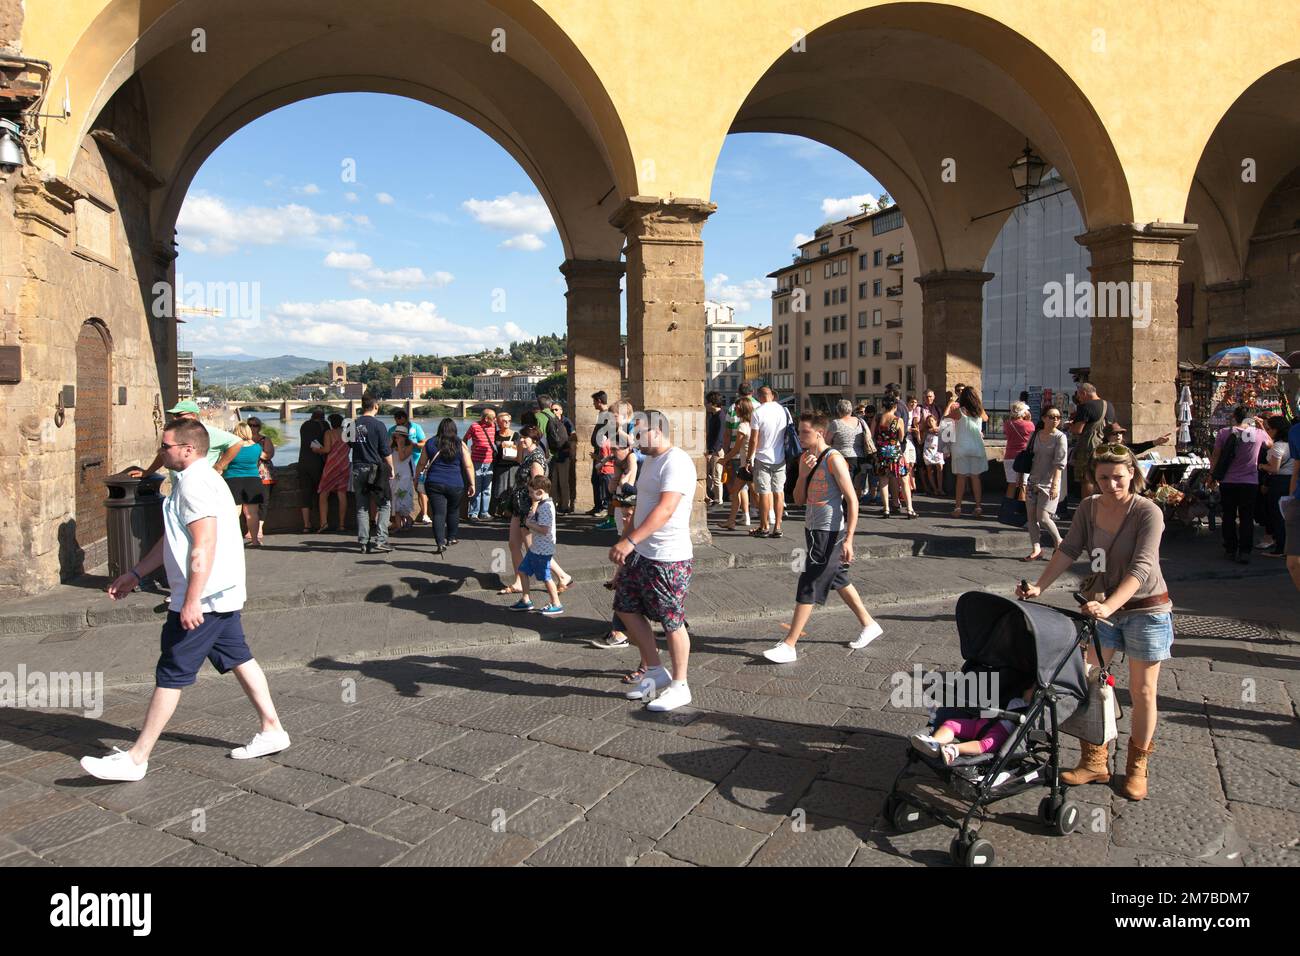 FIRENZE, ITALIA IL 25 AGOSTO 2014. Foto delle persone che passeggiando sul Ponte Vecchio. Persone non identificate. Uso editoriale. Foto Stock